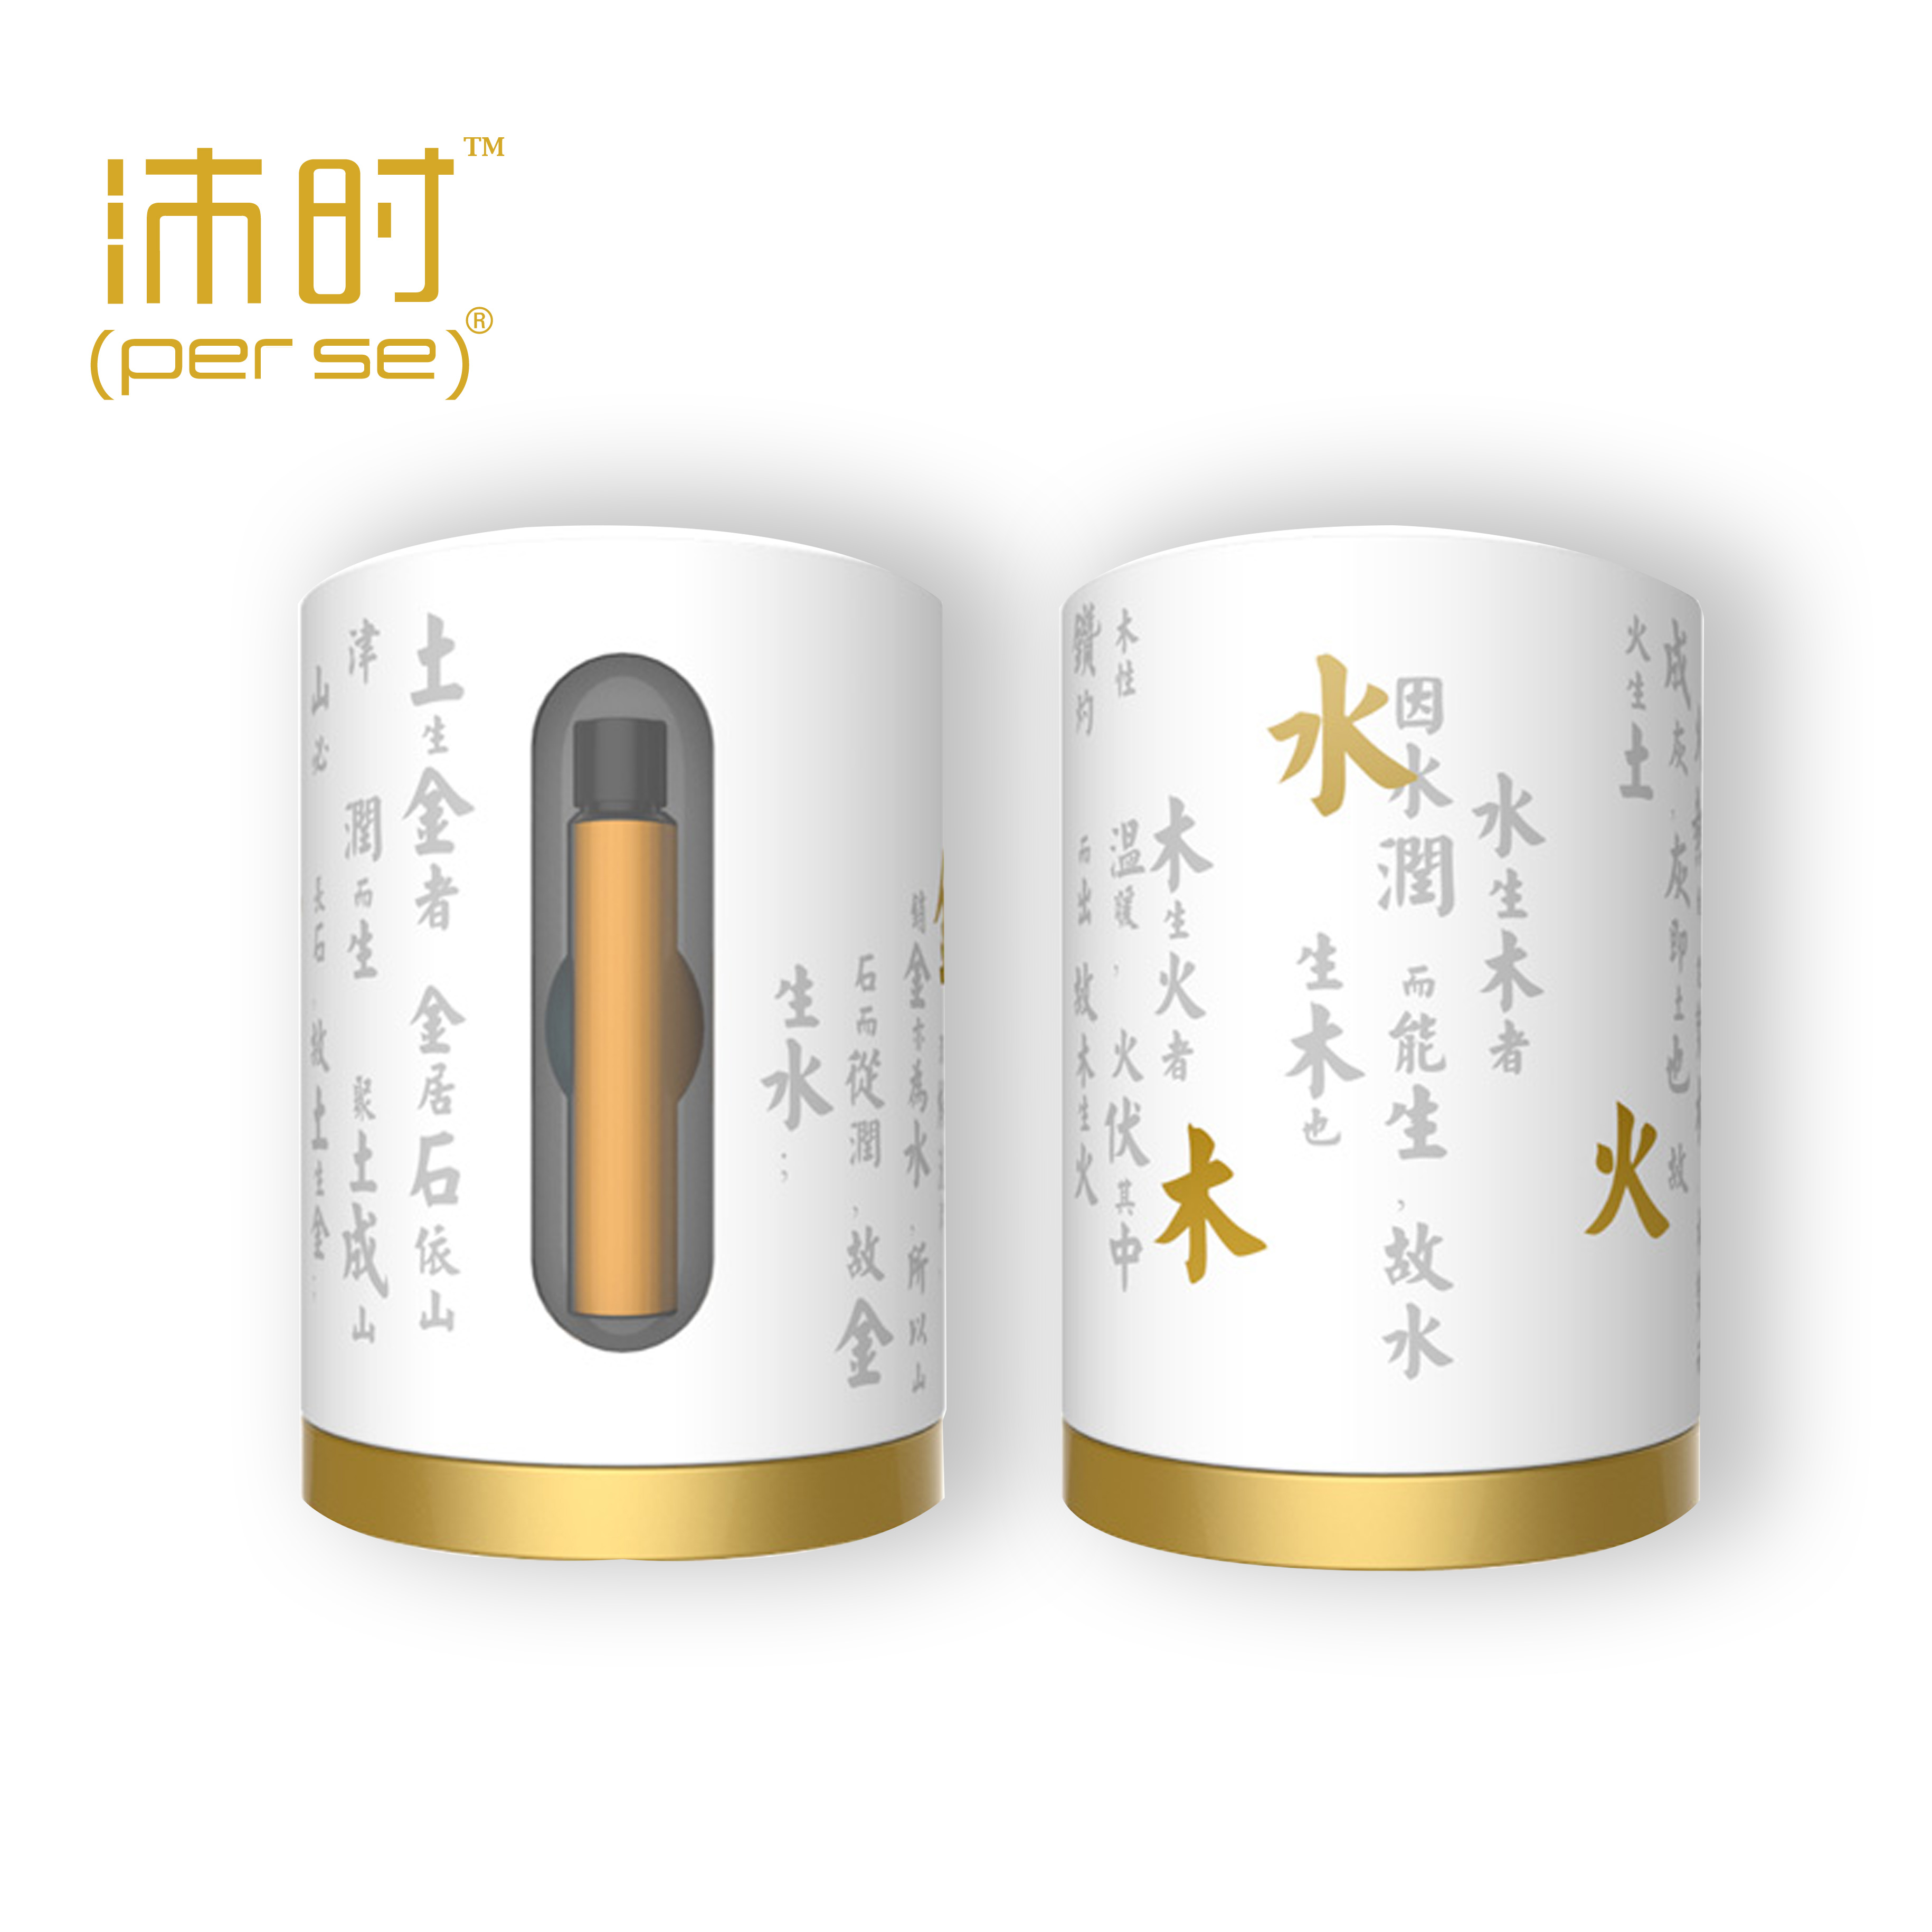 北京沛時健康科技有限公司-沛時五行纖瘦系列包裝設計